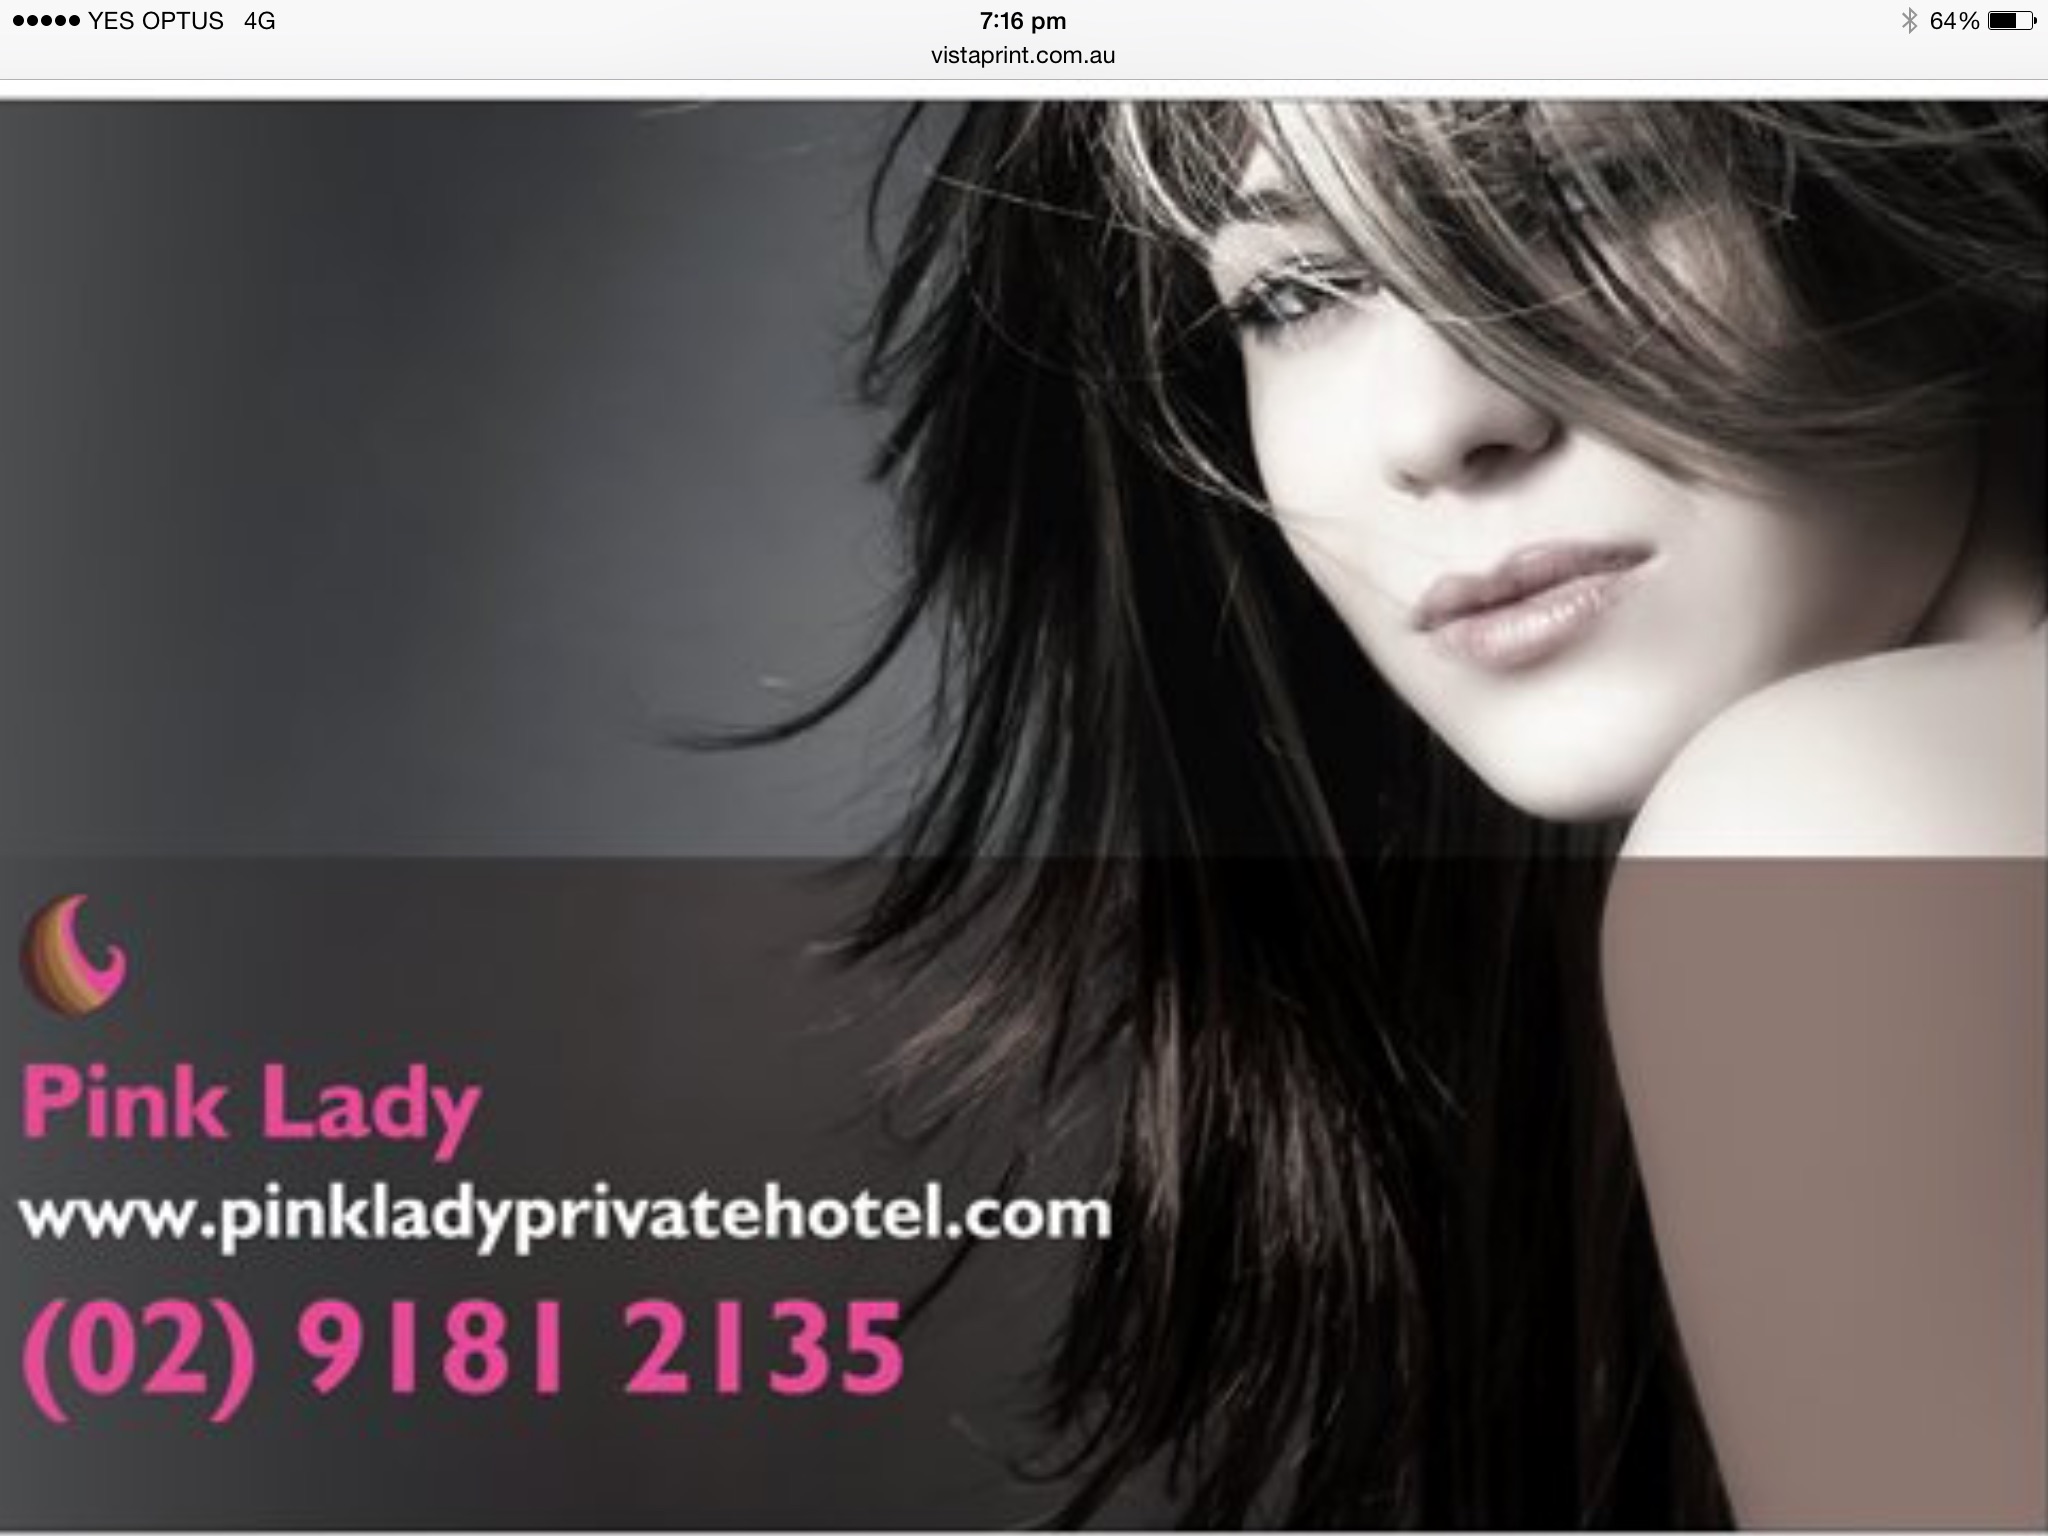 Pink Lady Private Hotel - Yamba Accommodation